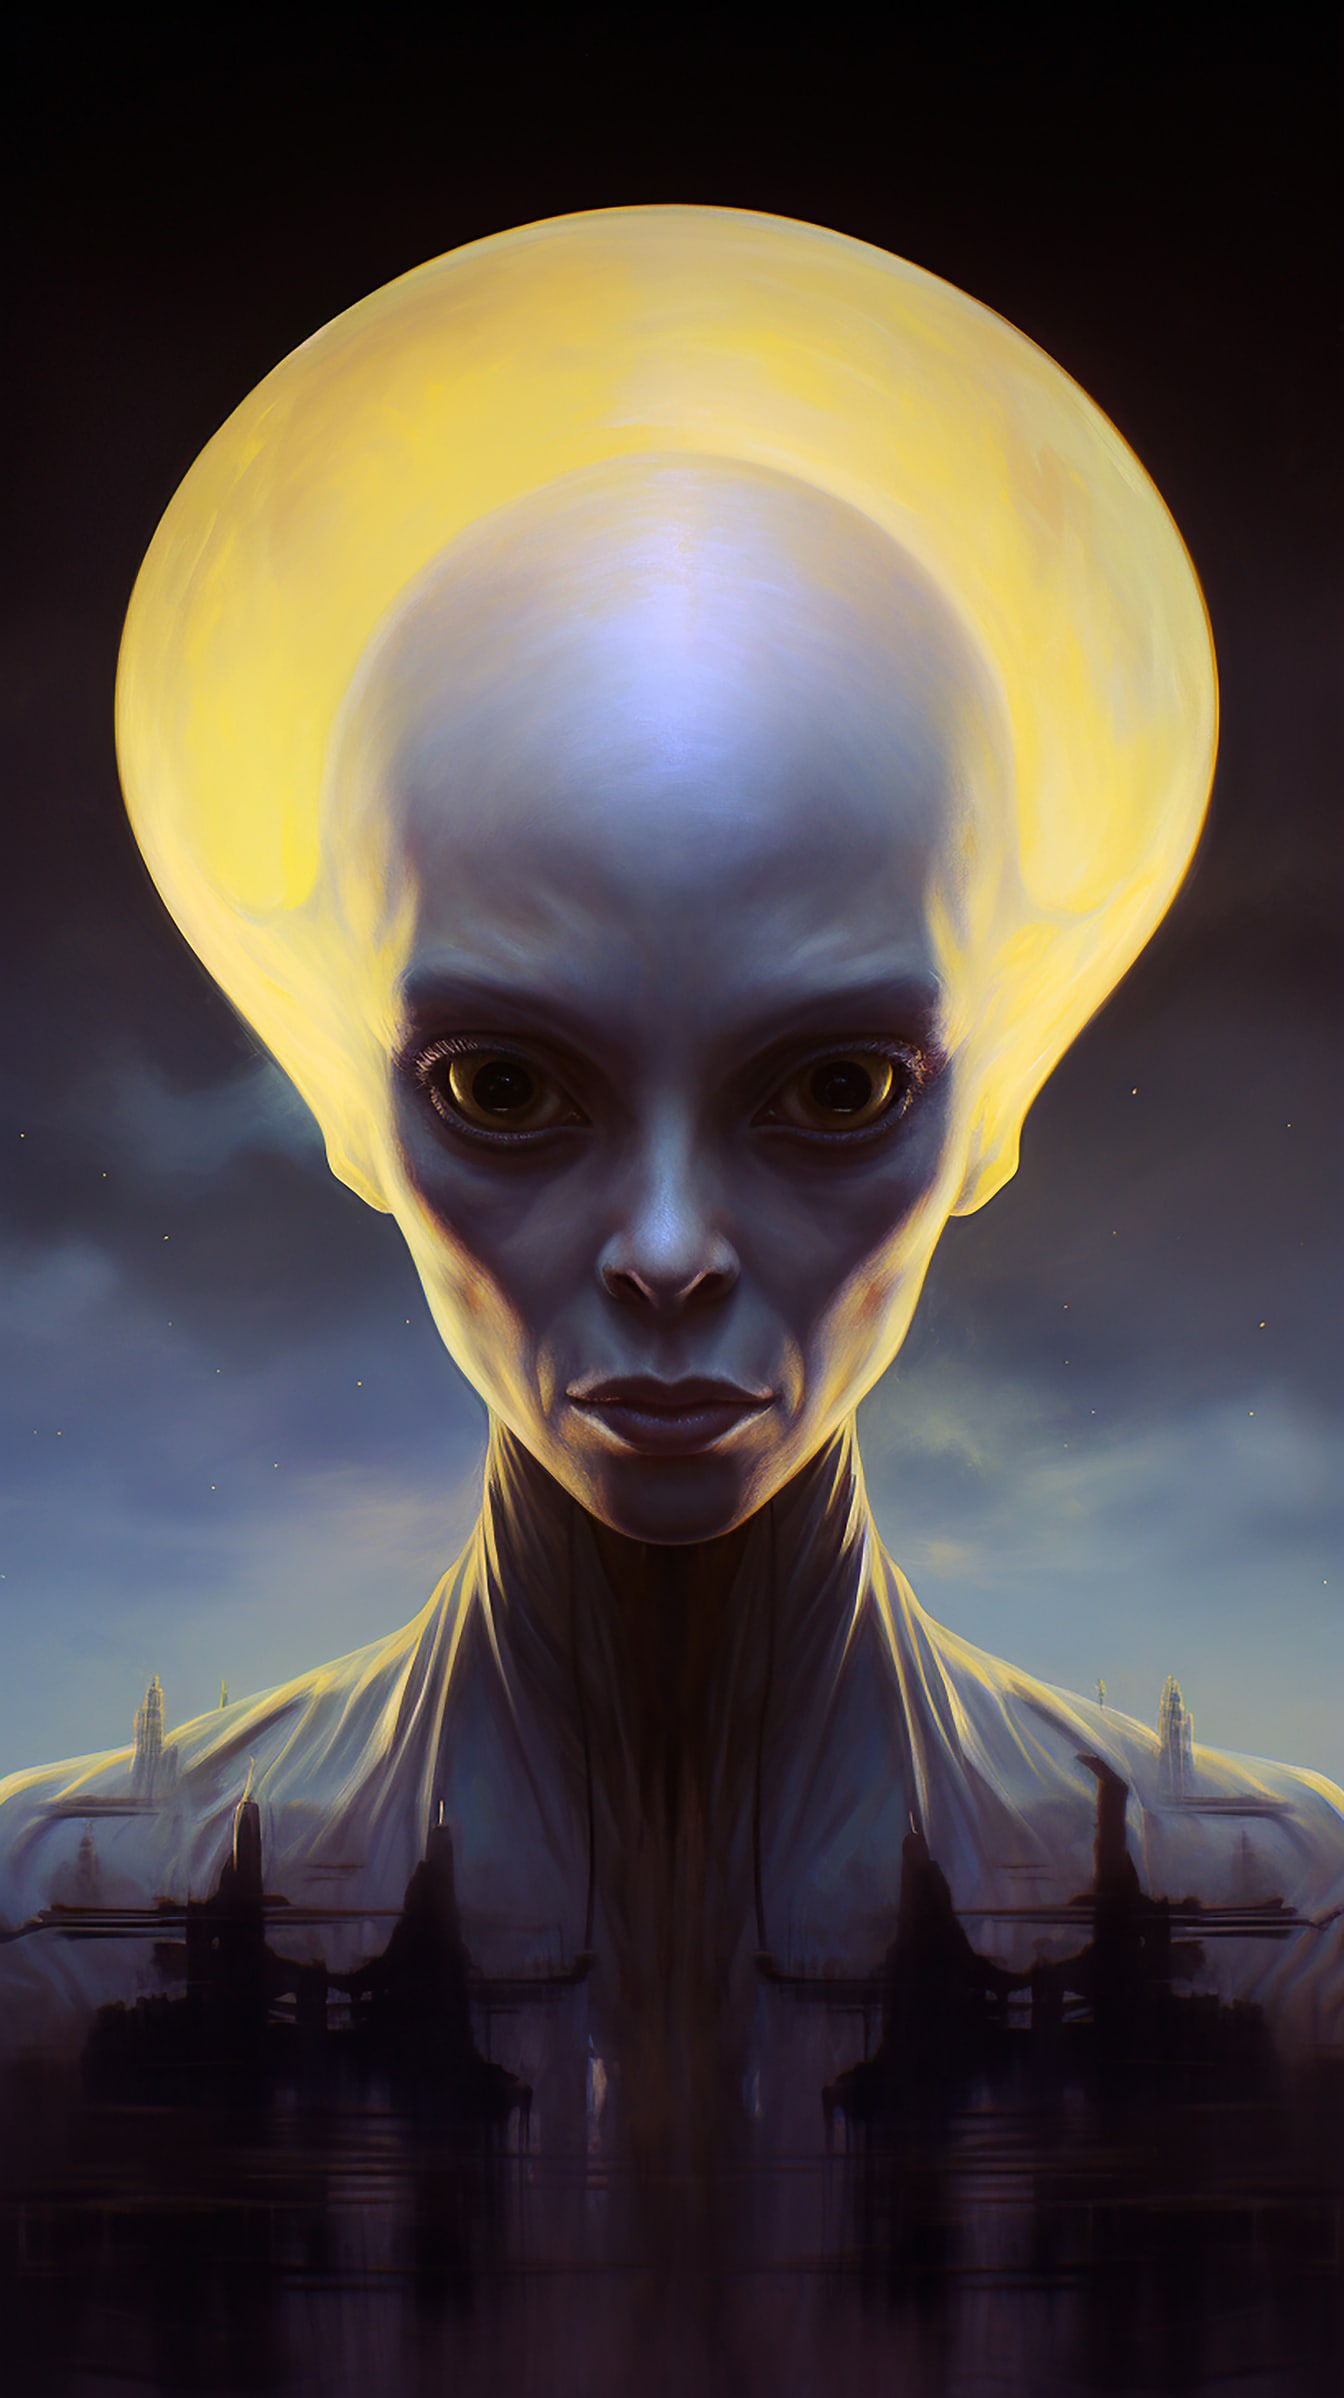 Portrét humanoidného mimozemského tvora s veľkou hlavou